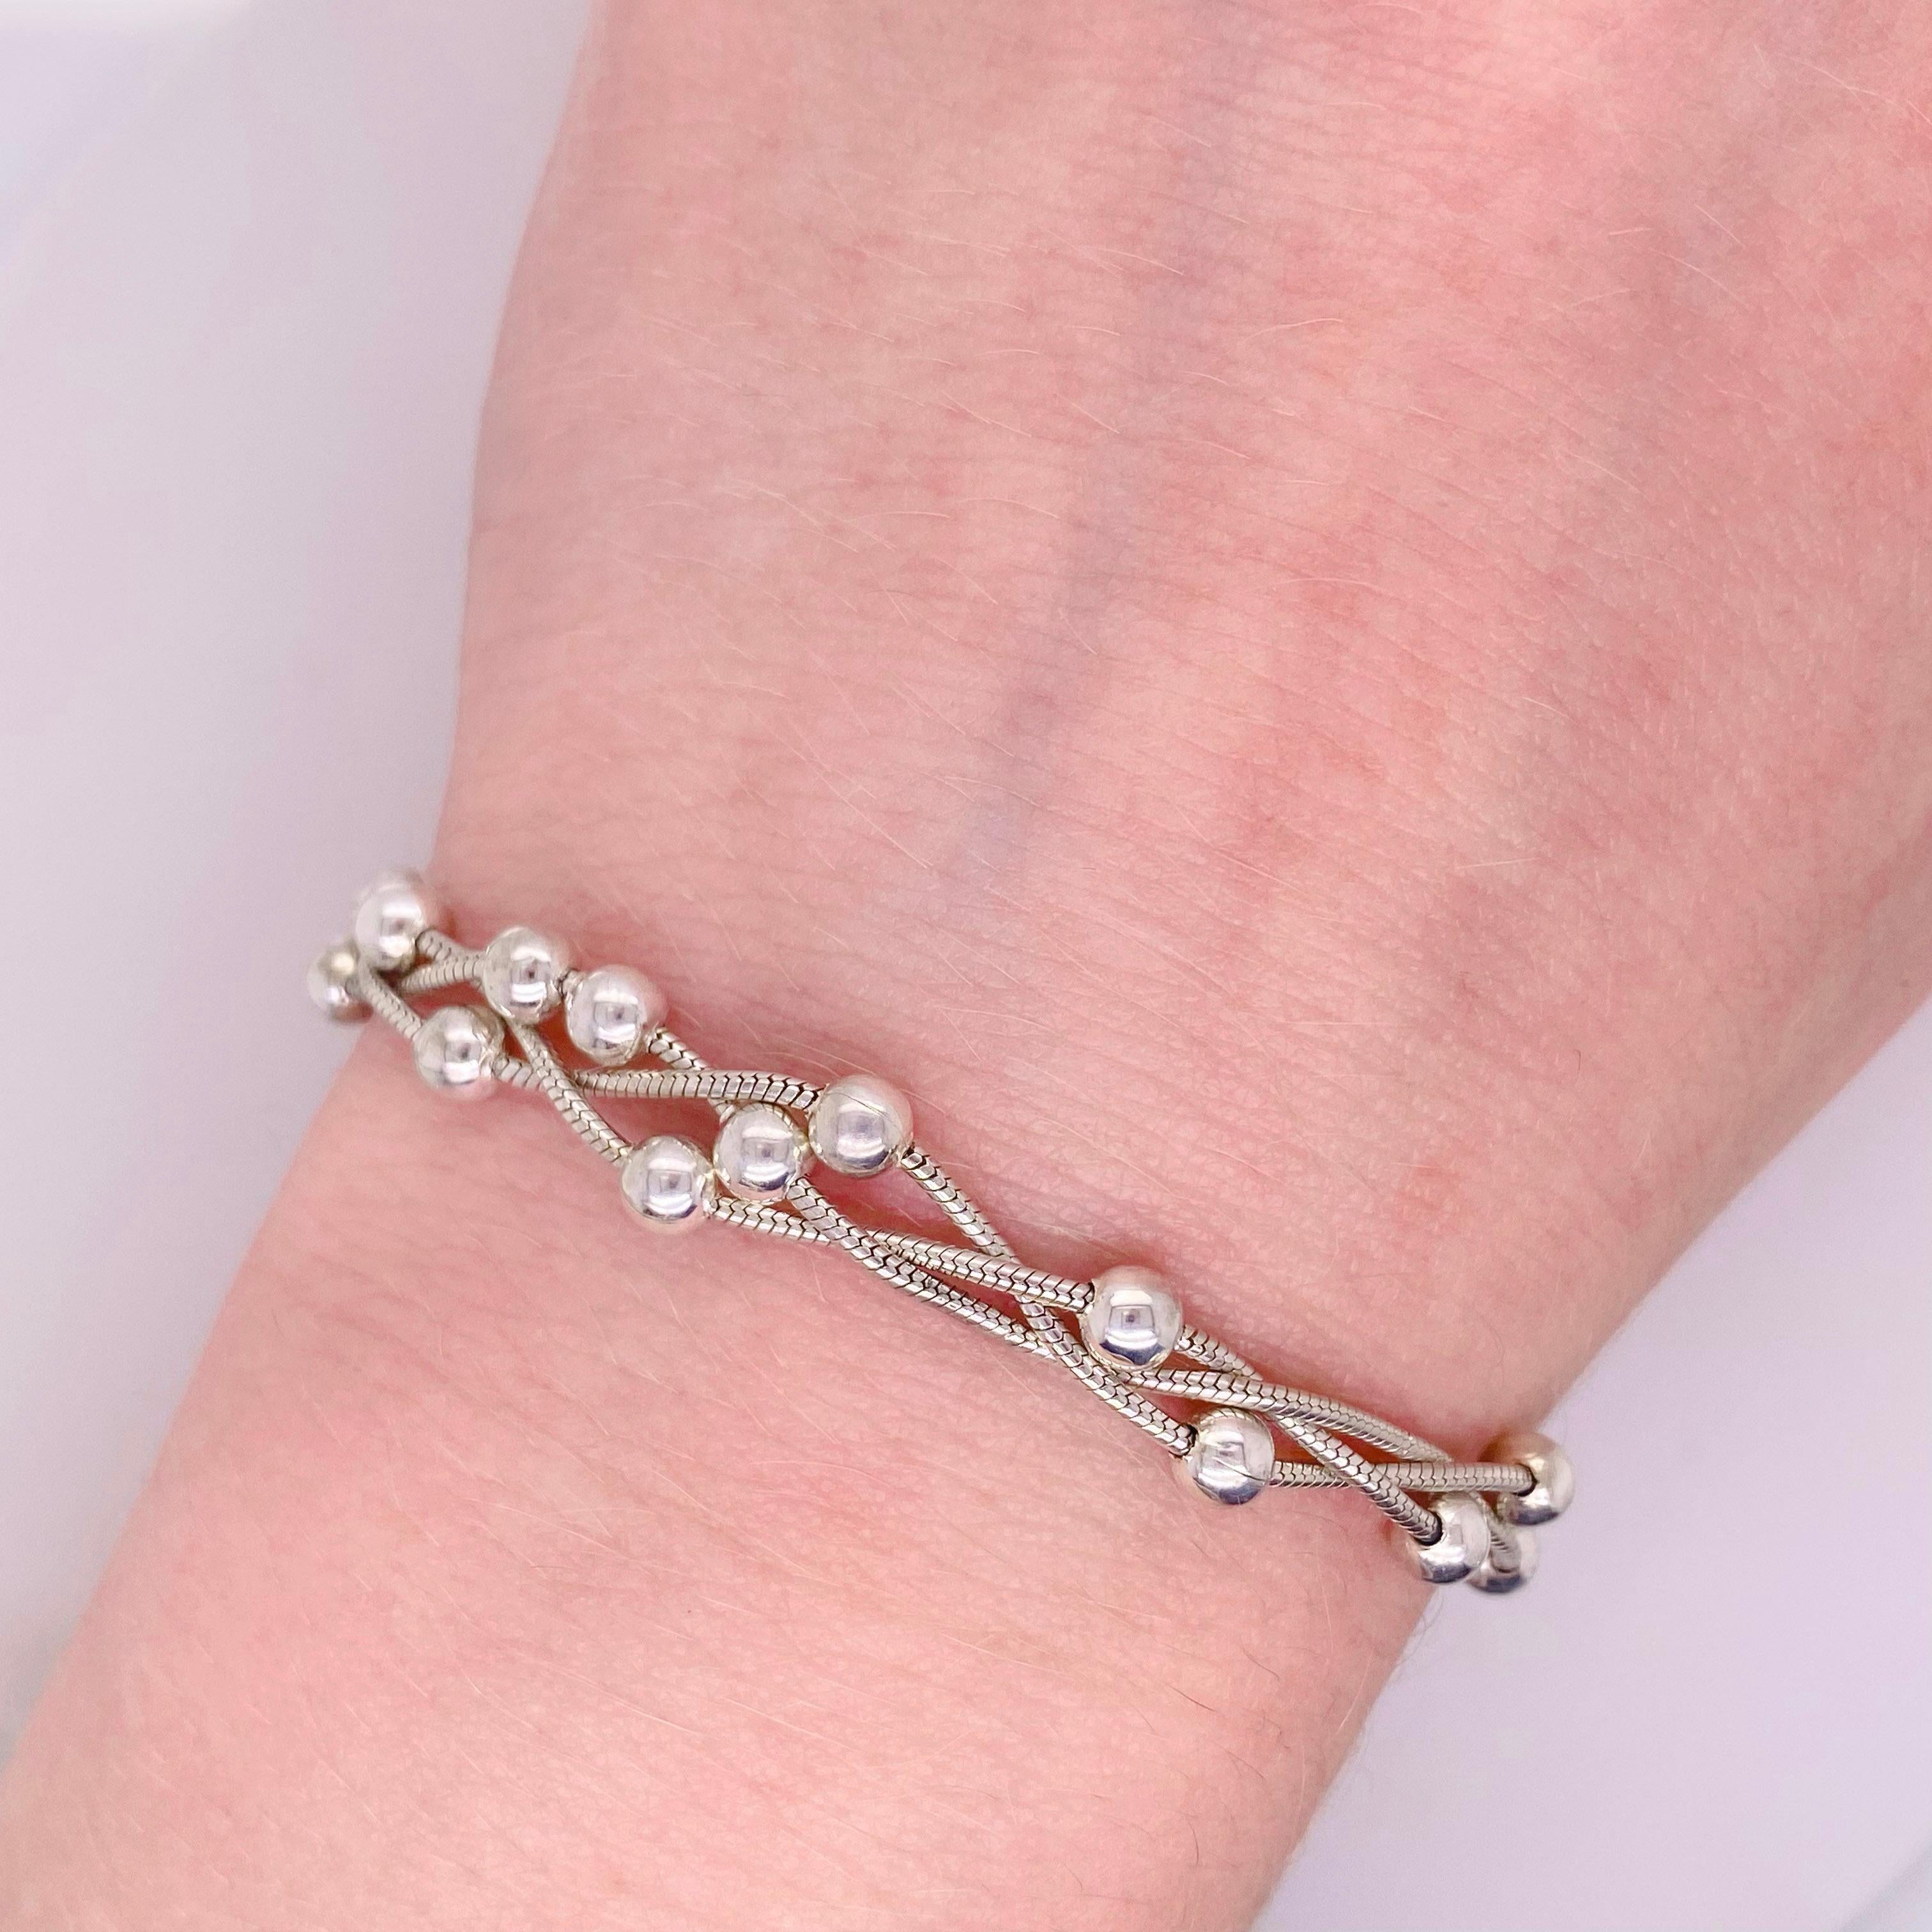 Ce bracelet de perles en argent est unique en son genre ! Fabriqué avec une belle chaîne serpent avec des perles sterling éparpillées. Il est magnifique seul ou empilé avec d'autres bracelets. Il y en a un ! Les détails de ce magnifique bracelet